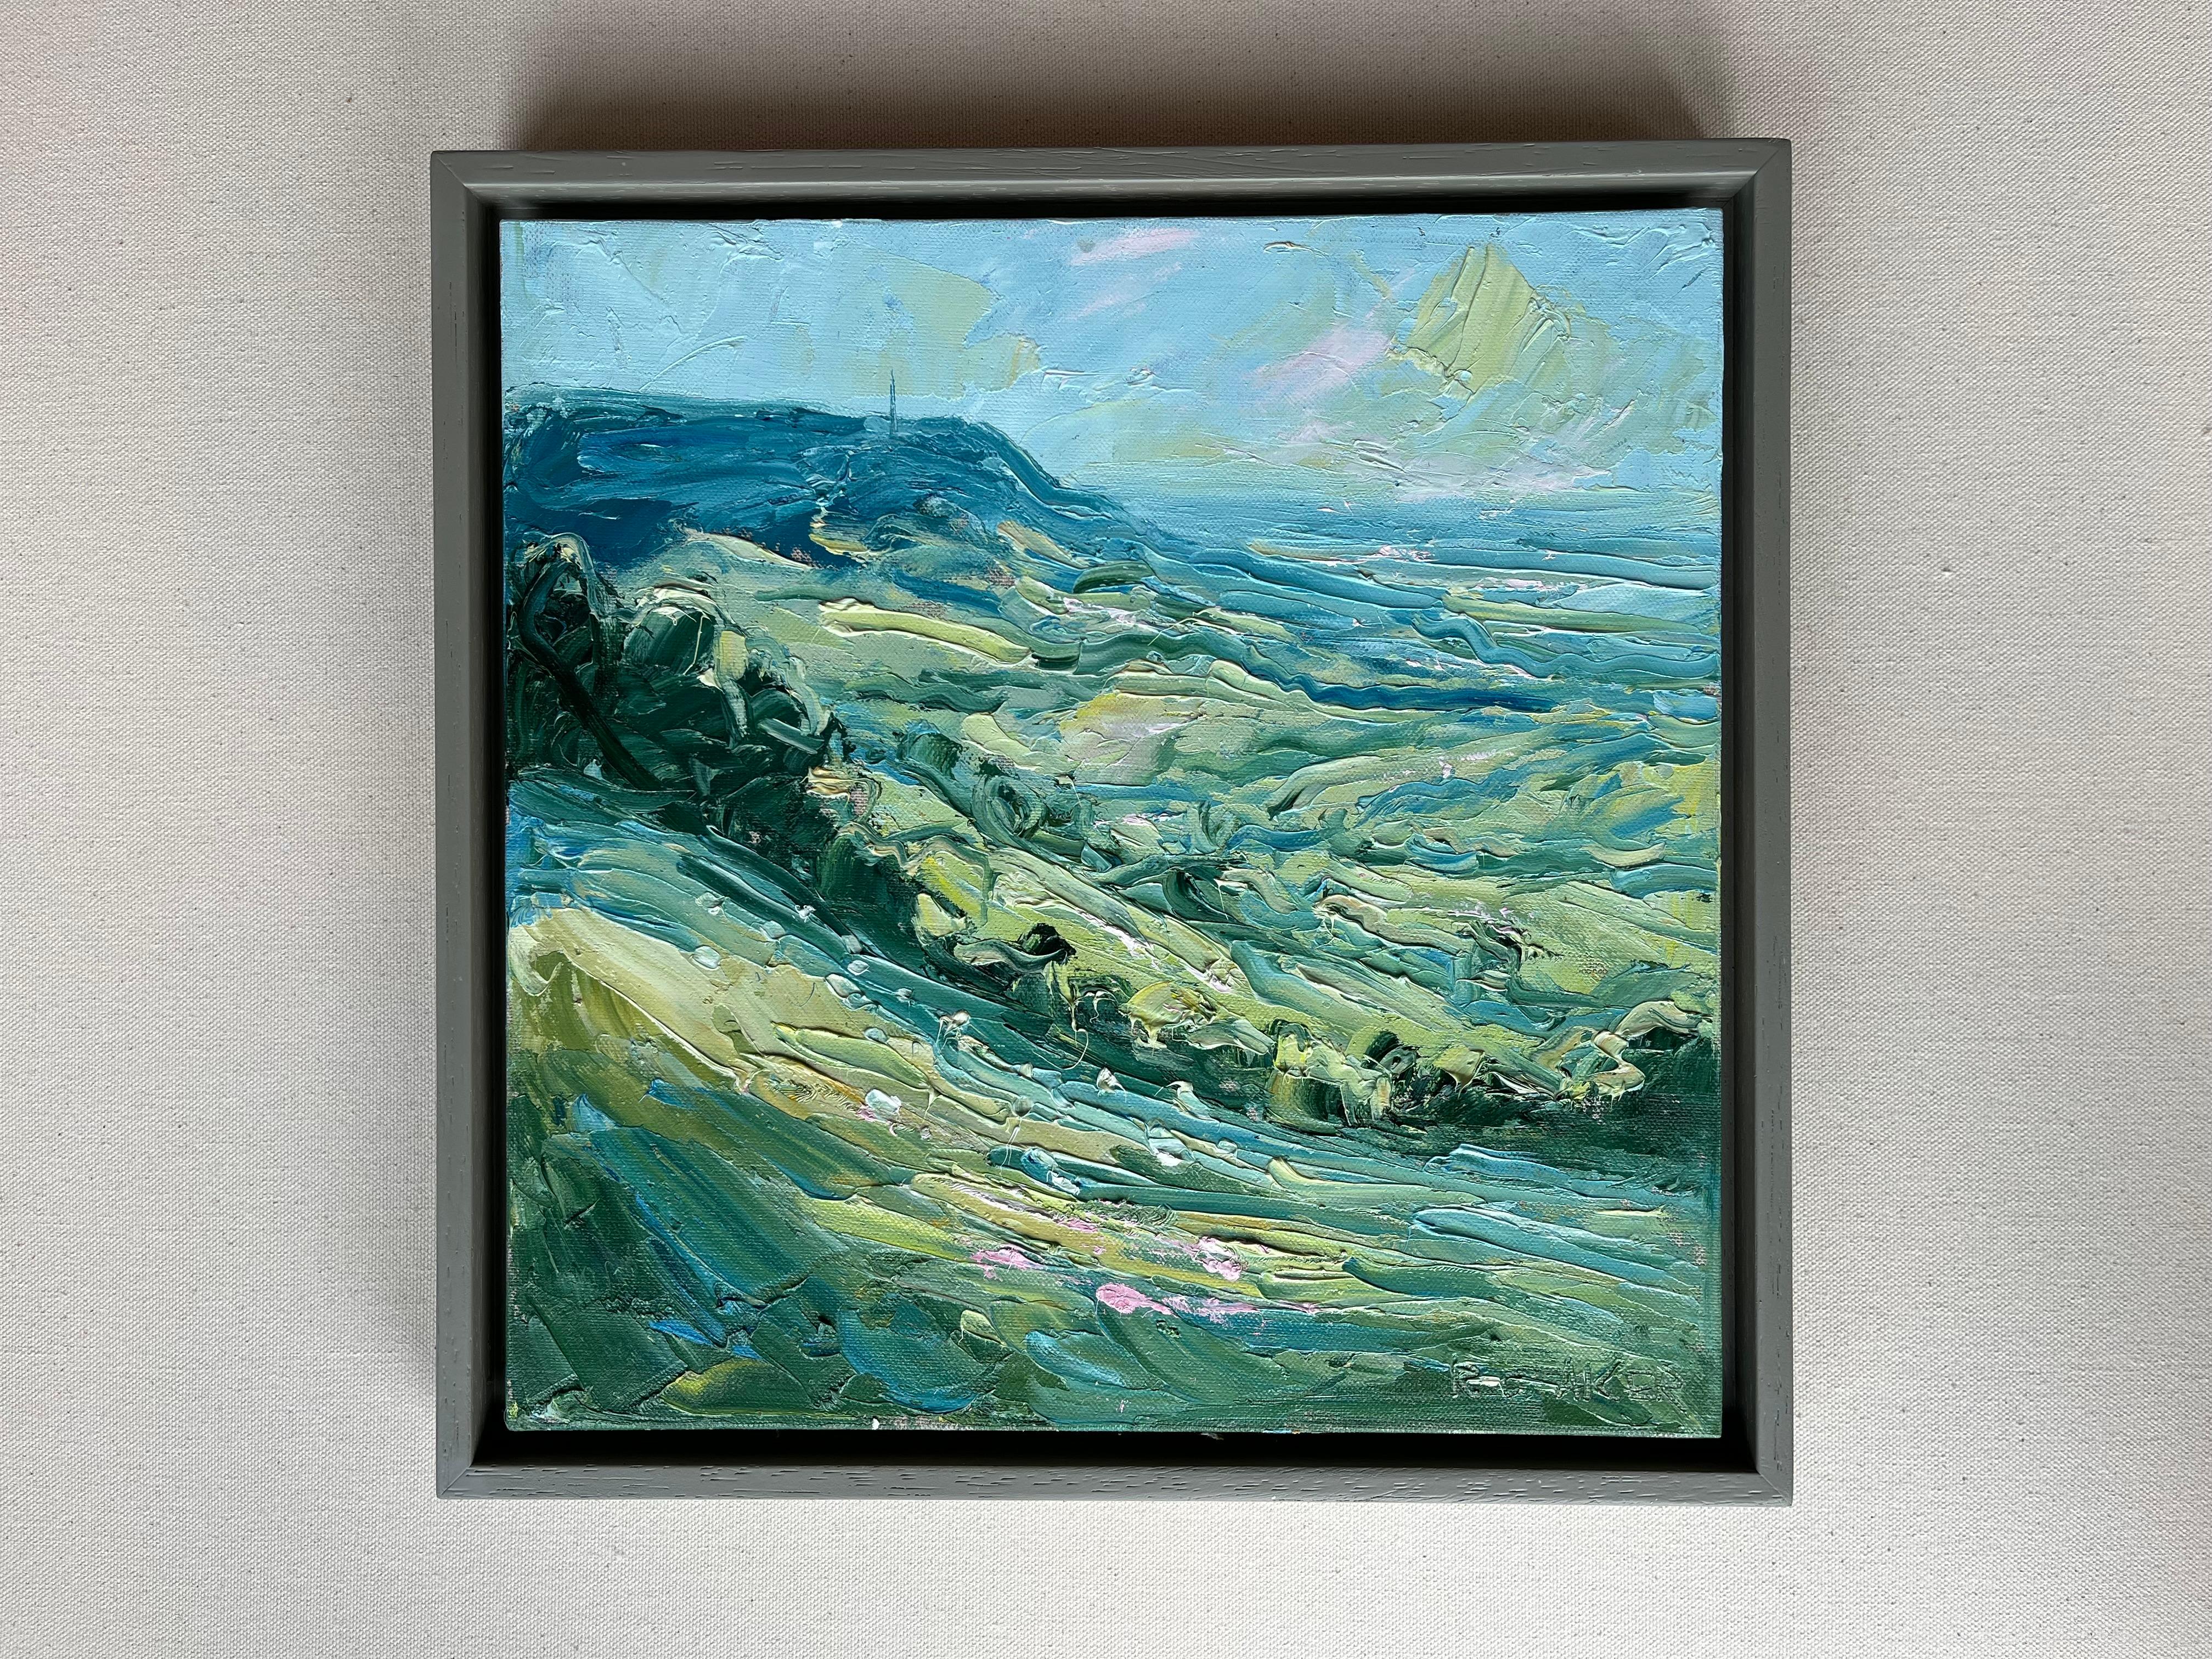 Hill, après-midi, Gloucestershire. Paysage impressionniste - Impressionnisme Painting par Rupert Aker